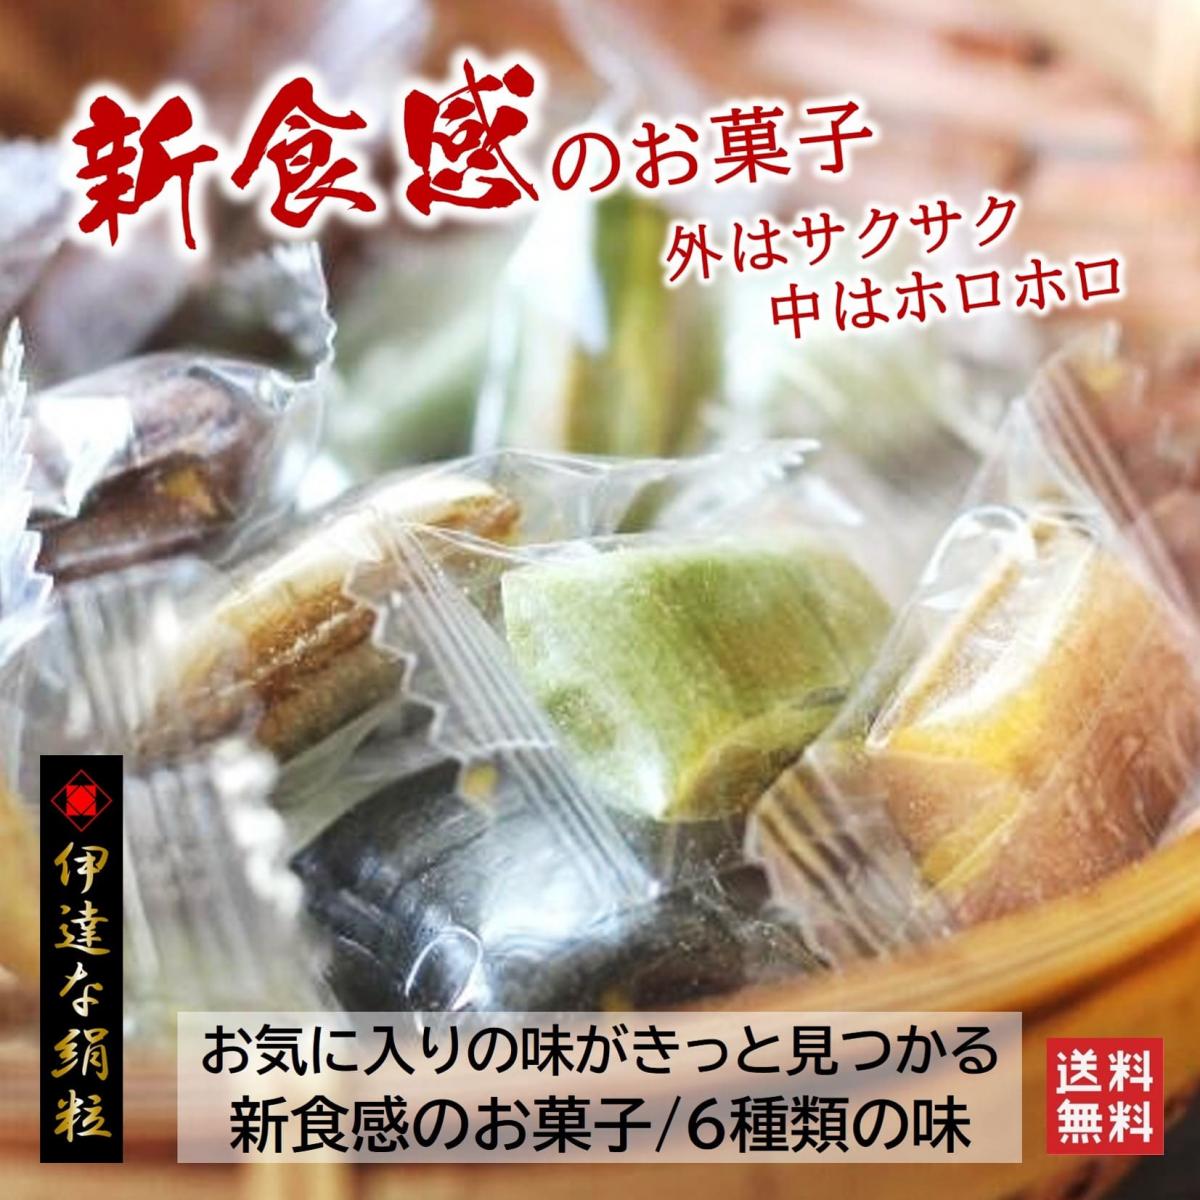 【新食感のお菓子/6袋詰め合せ】6種類の味くらべ